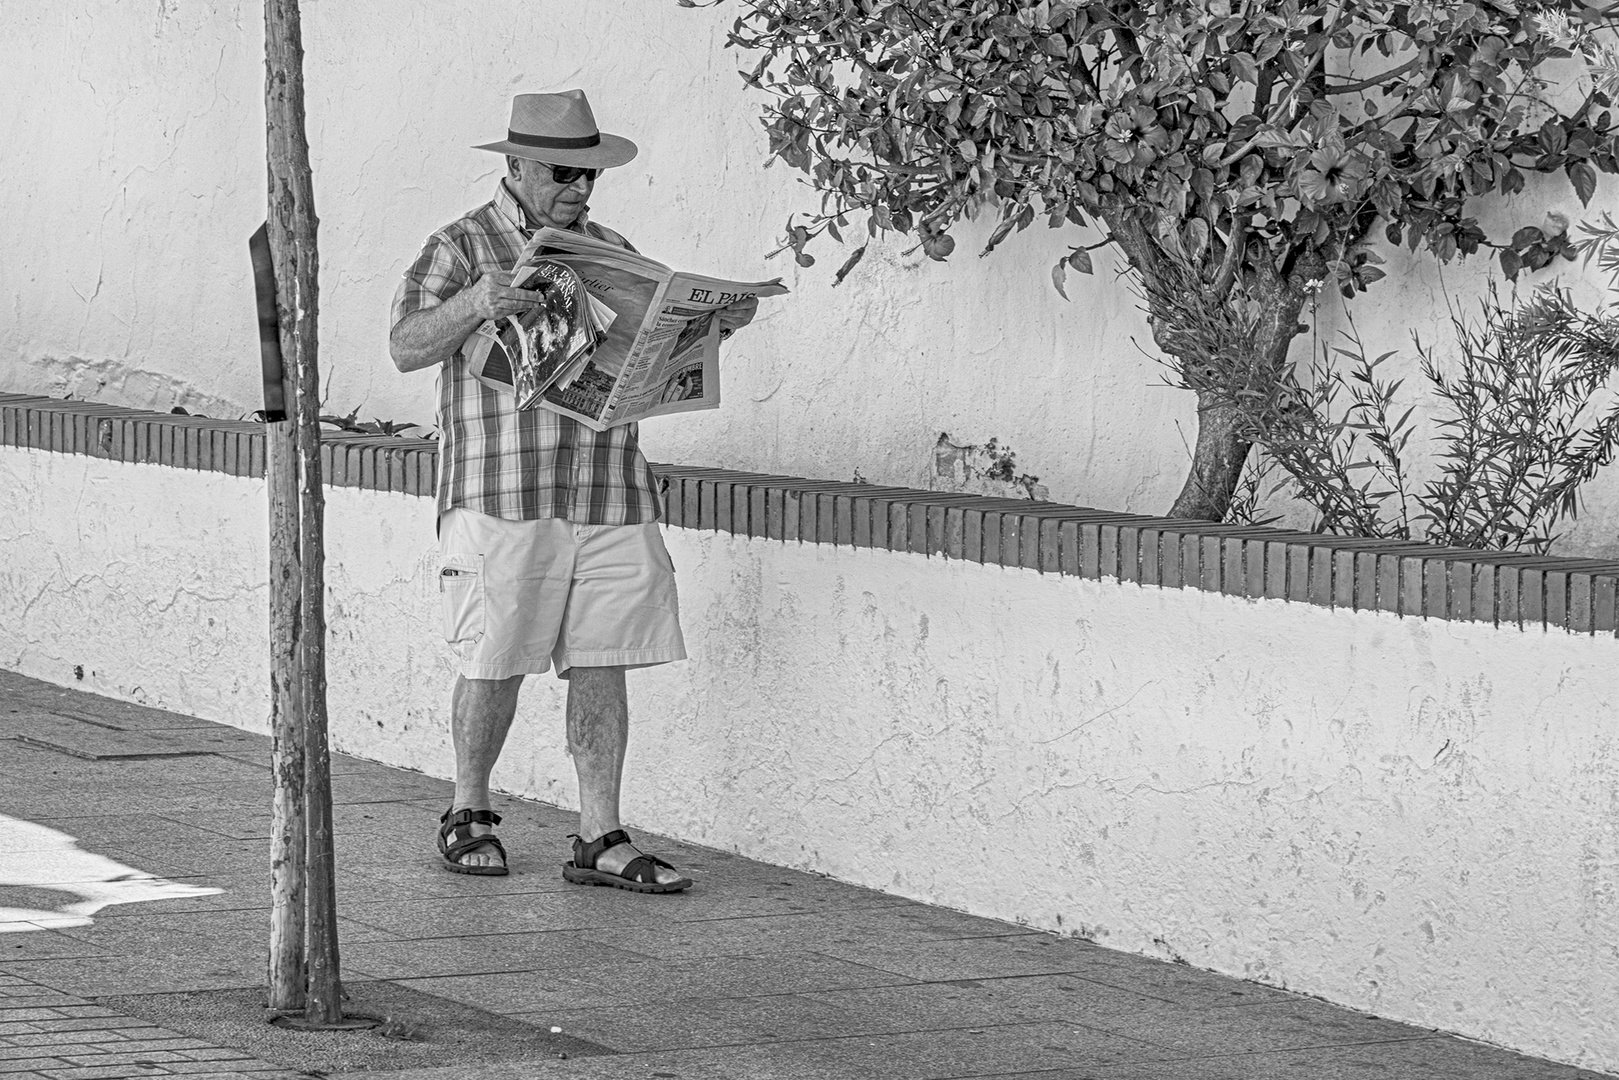 Reader in Spain